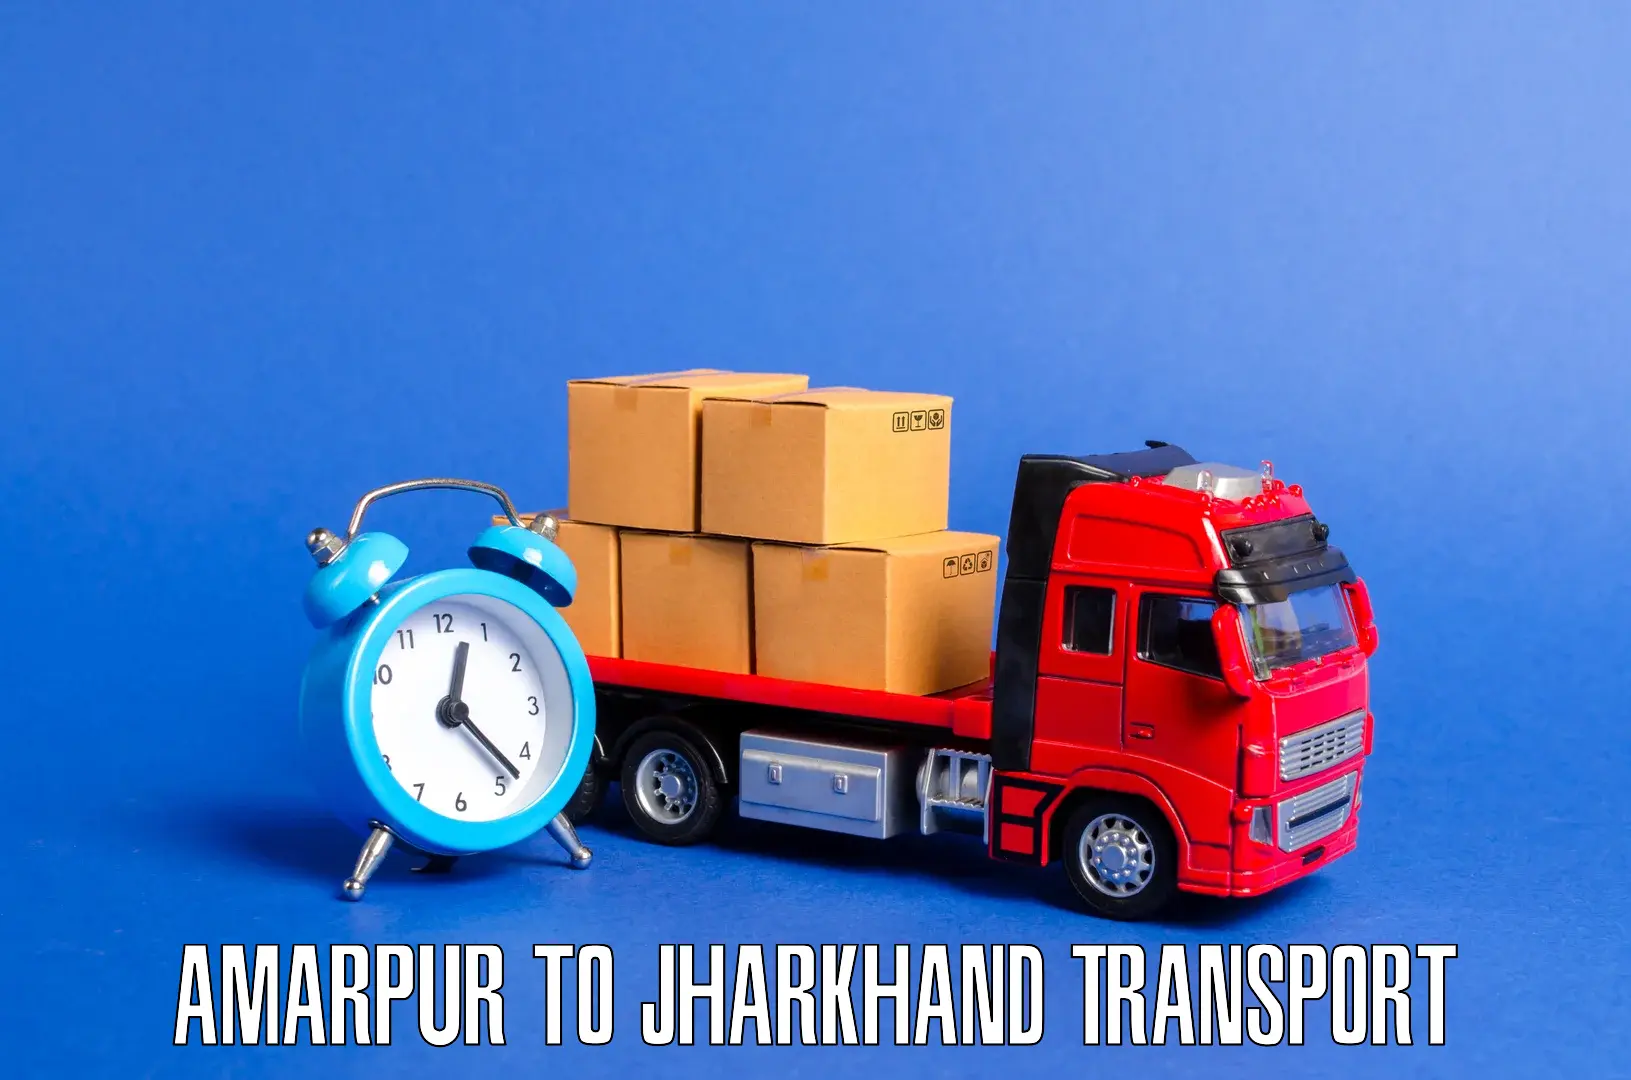 Vehicle transport services Amarpur to Gumla